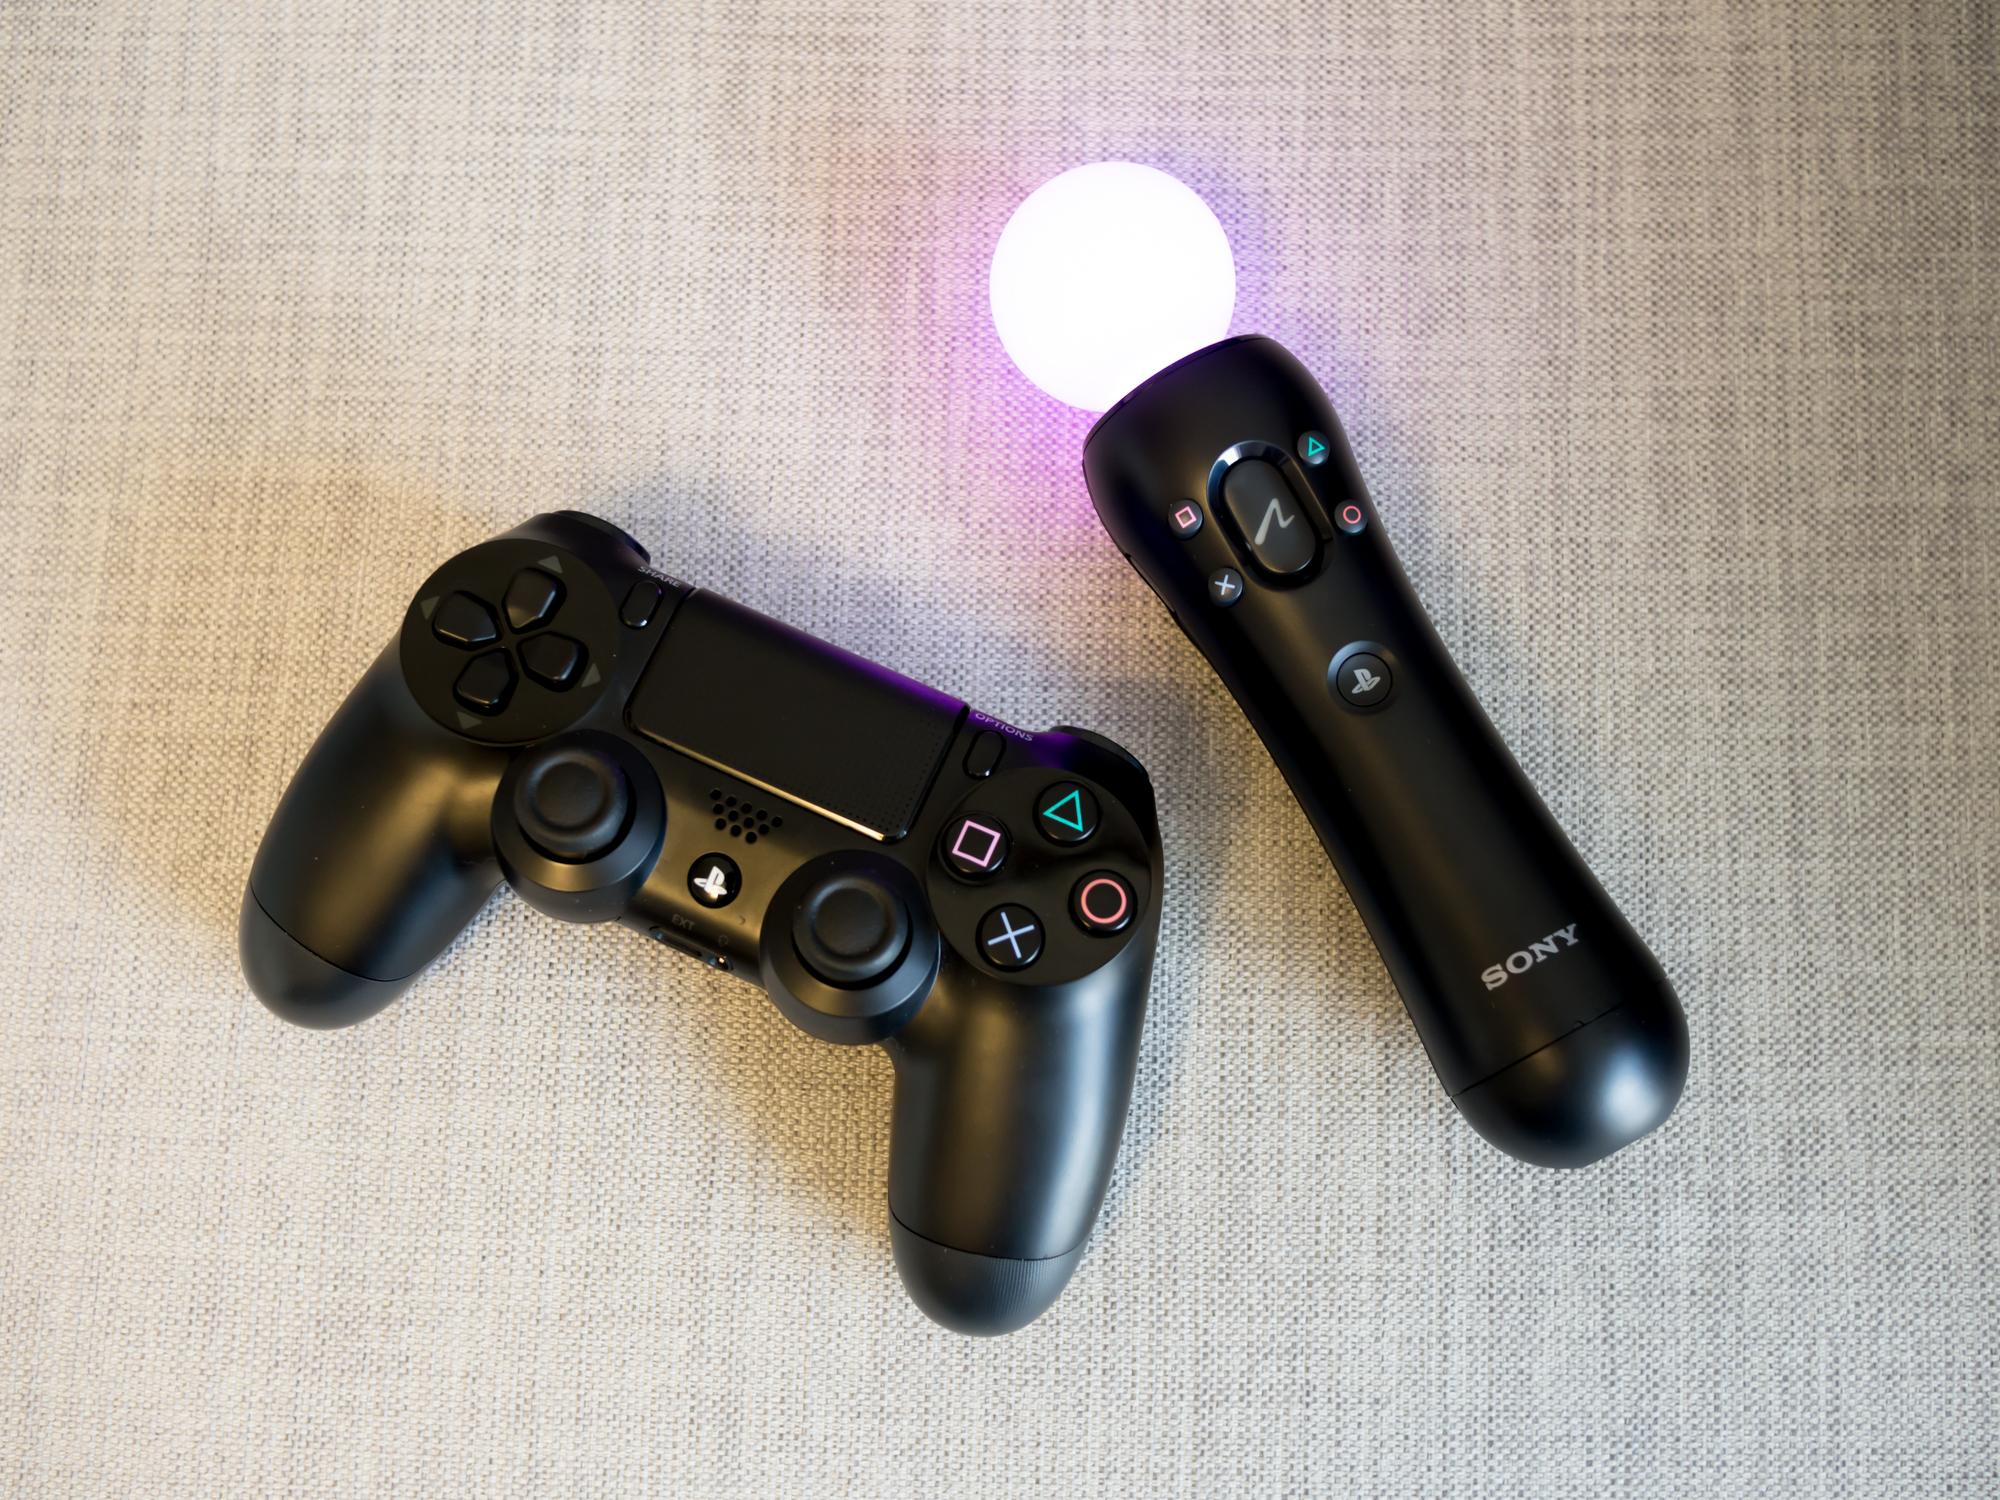 Playstation Moveコントローラーが充電されない場合の対処方法 Usbケーブルを接続しても赤ランプが点灯しない場合など Fulldive フルダイブ